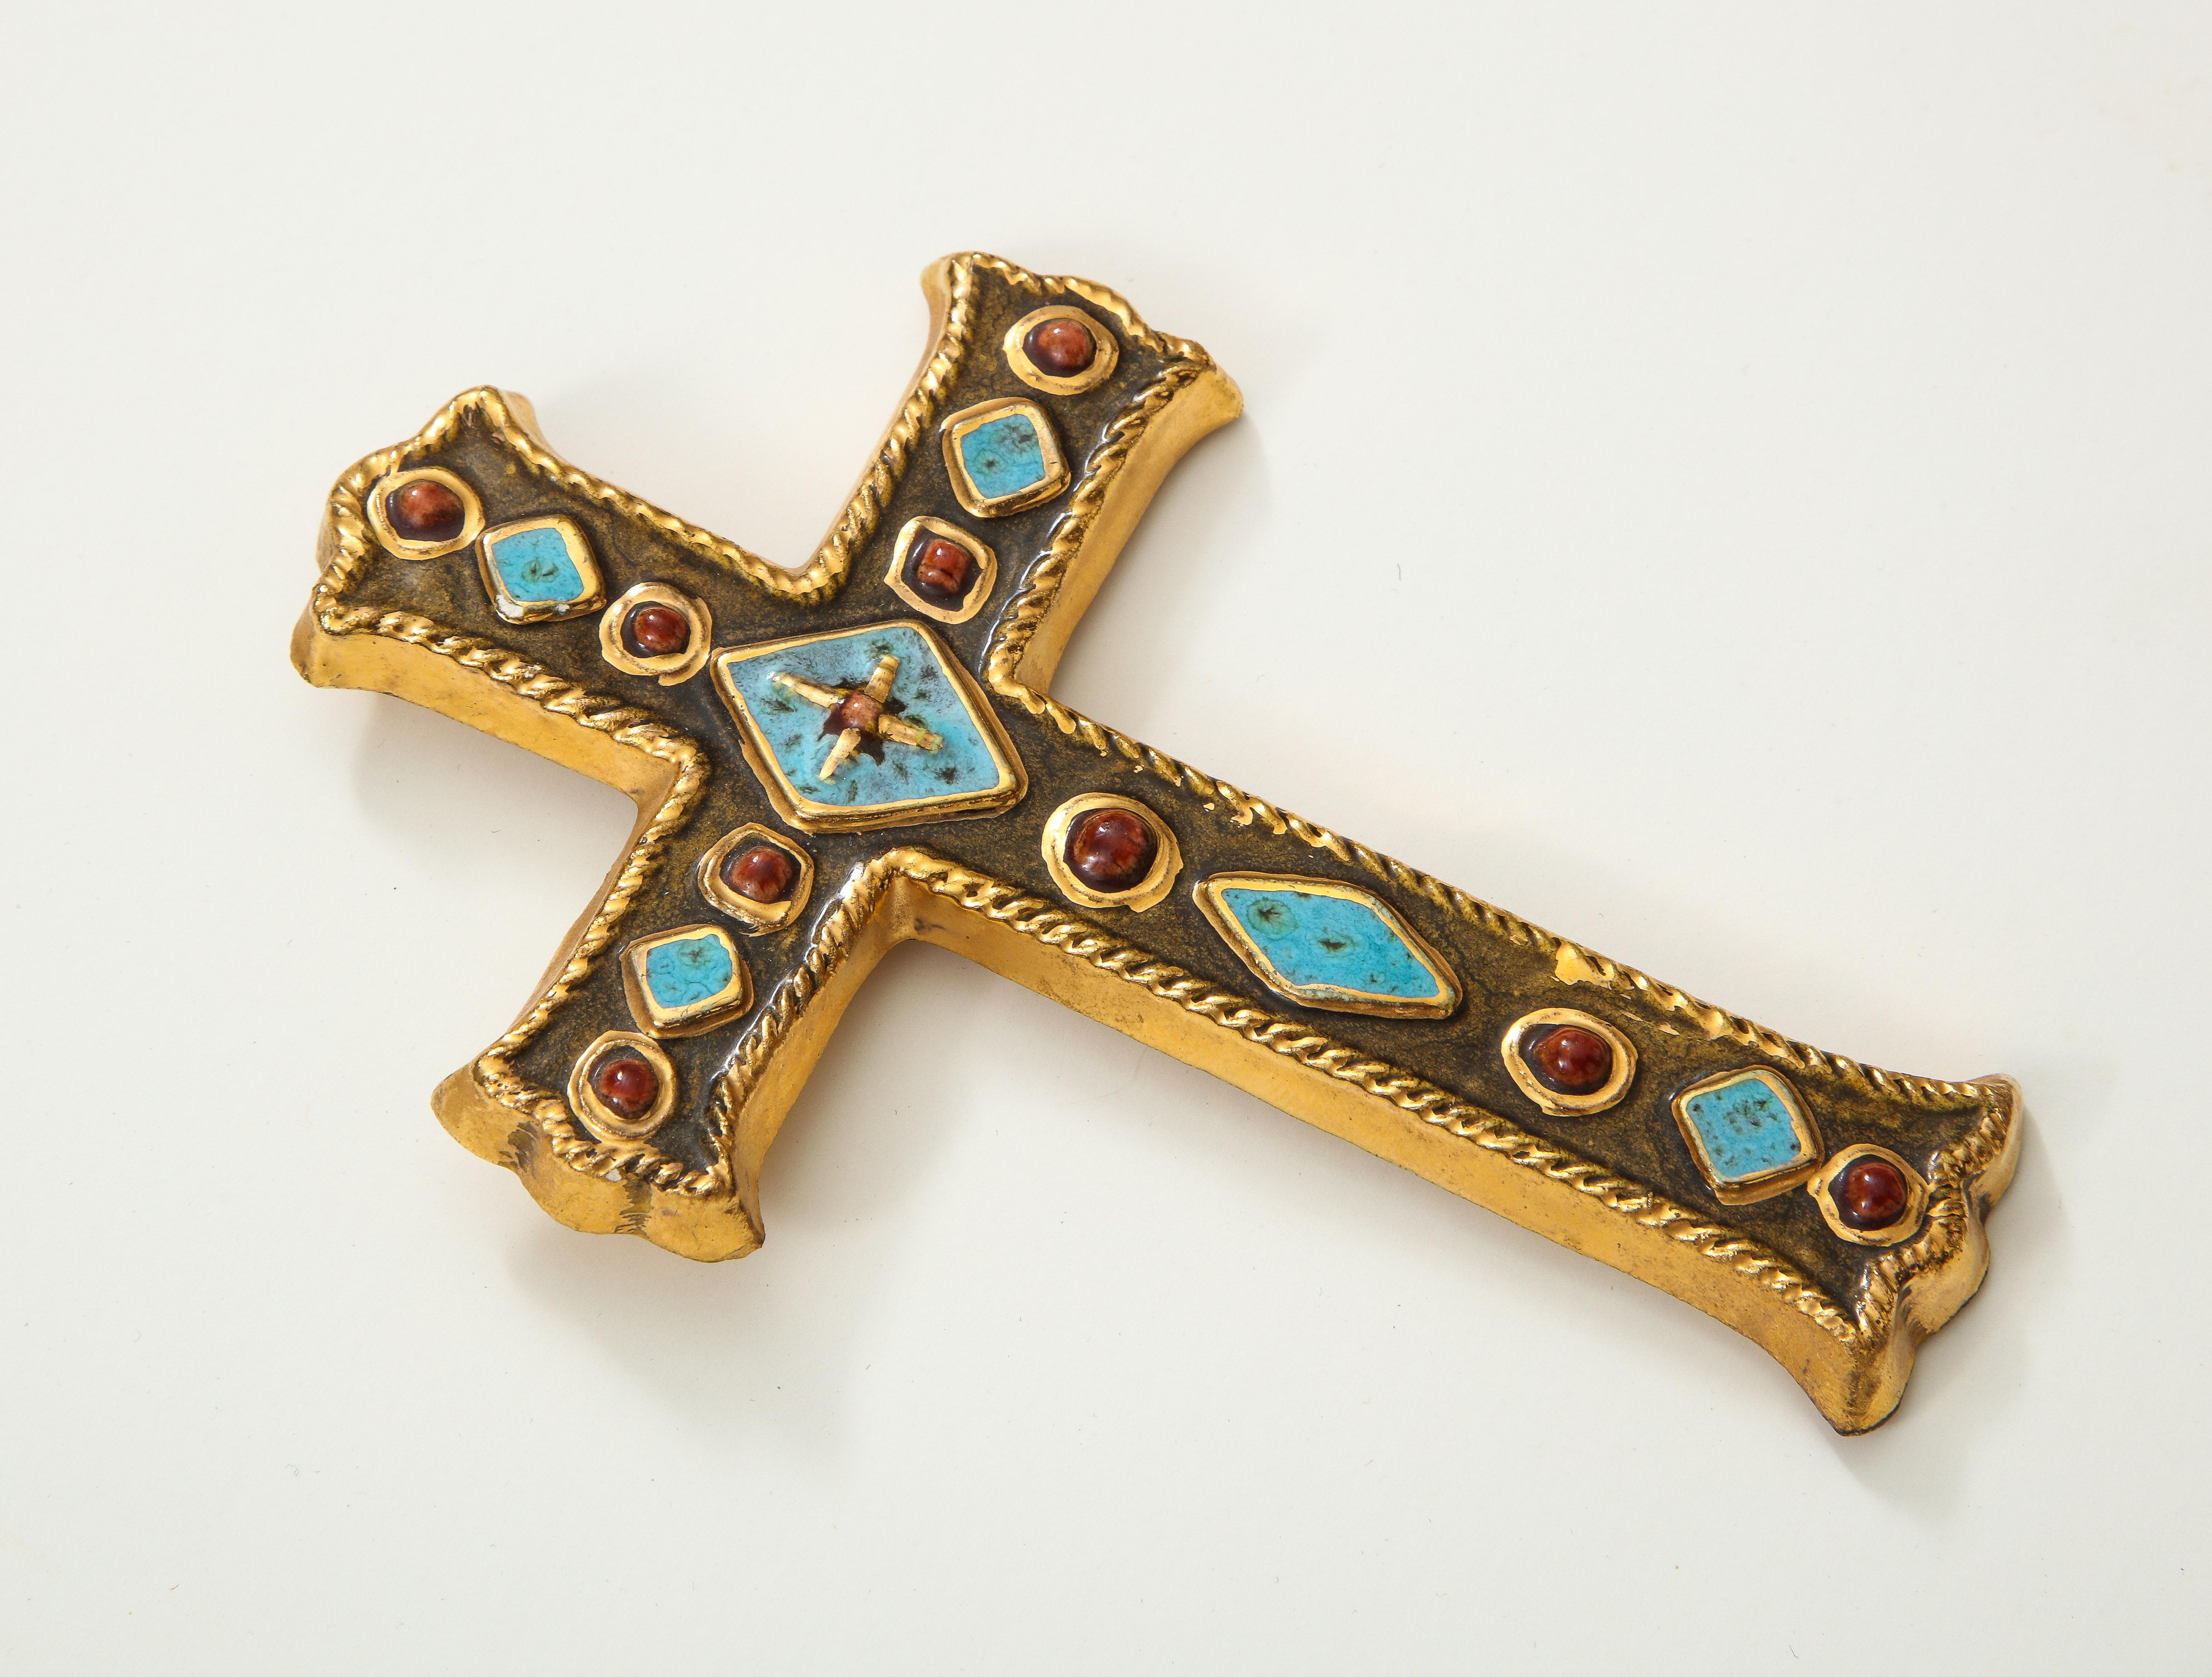 Croix bijoutière en céramique signée Francois Lembo, France

Jolie croix ornée de bijoux. Des détails étonnants. Signé au dos.